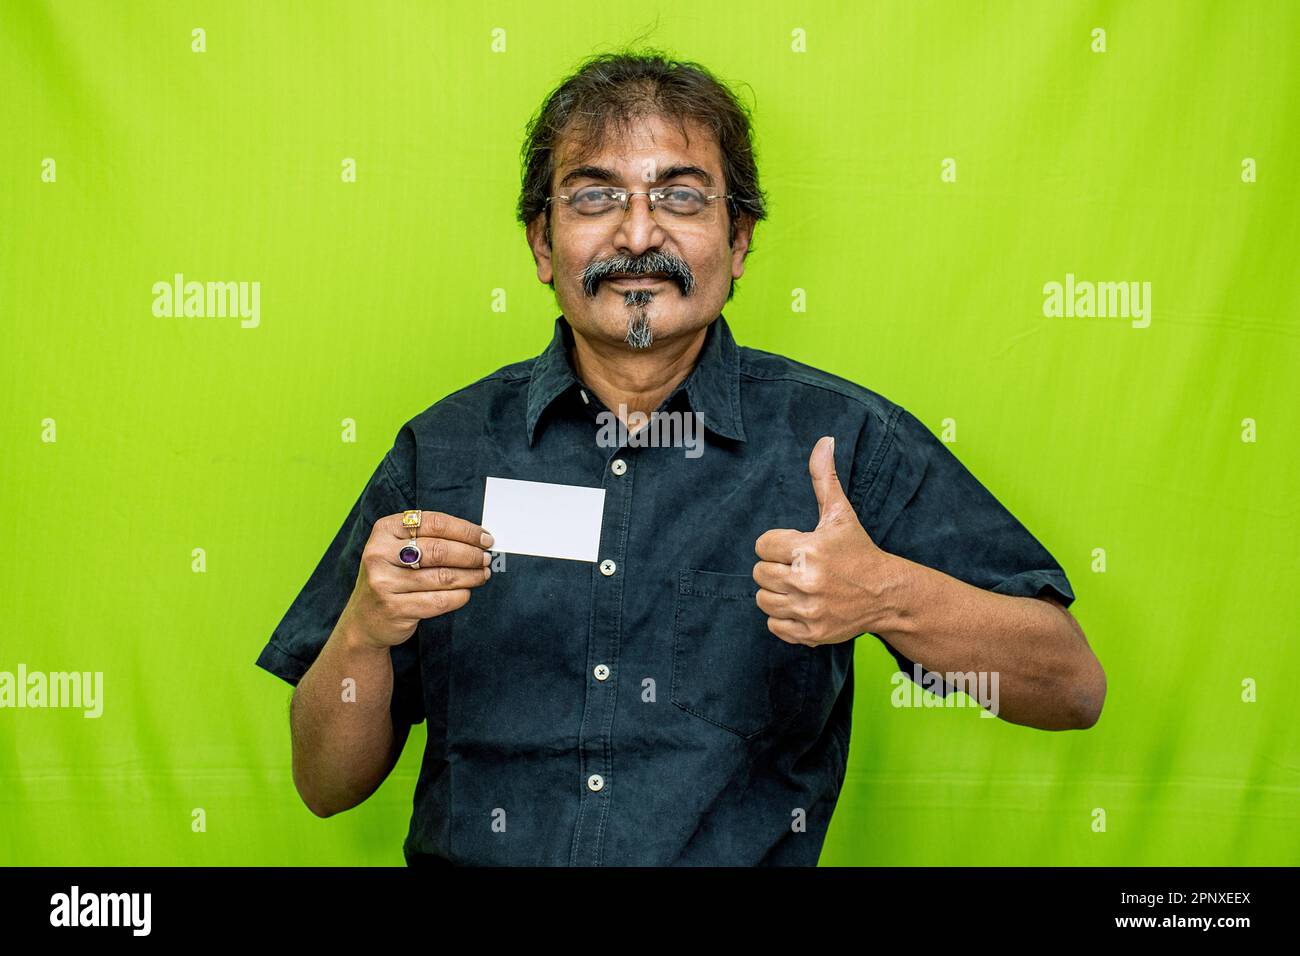 Ein Geschäftsmann in einem schwarzen Hemd und einer schwarzen Brille steht vor einem grünen Hintergrund, lächelt und hält eine Kredit-/Debitkarte in der rechten Hand Stockfoto